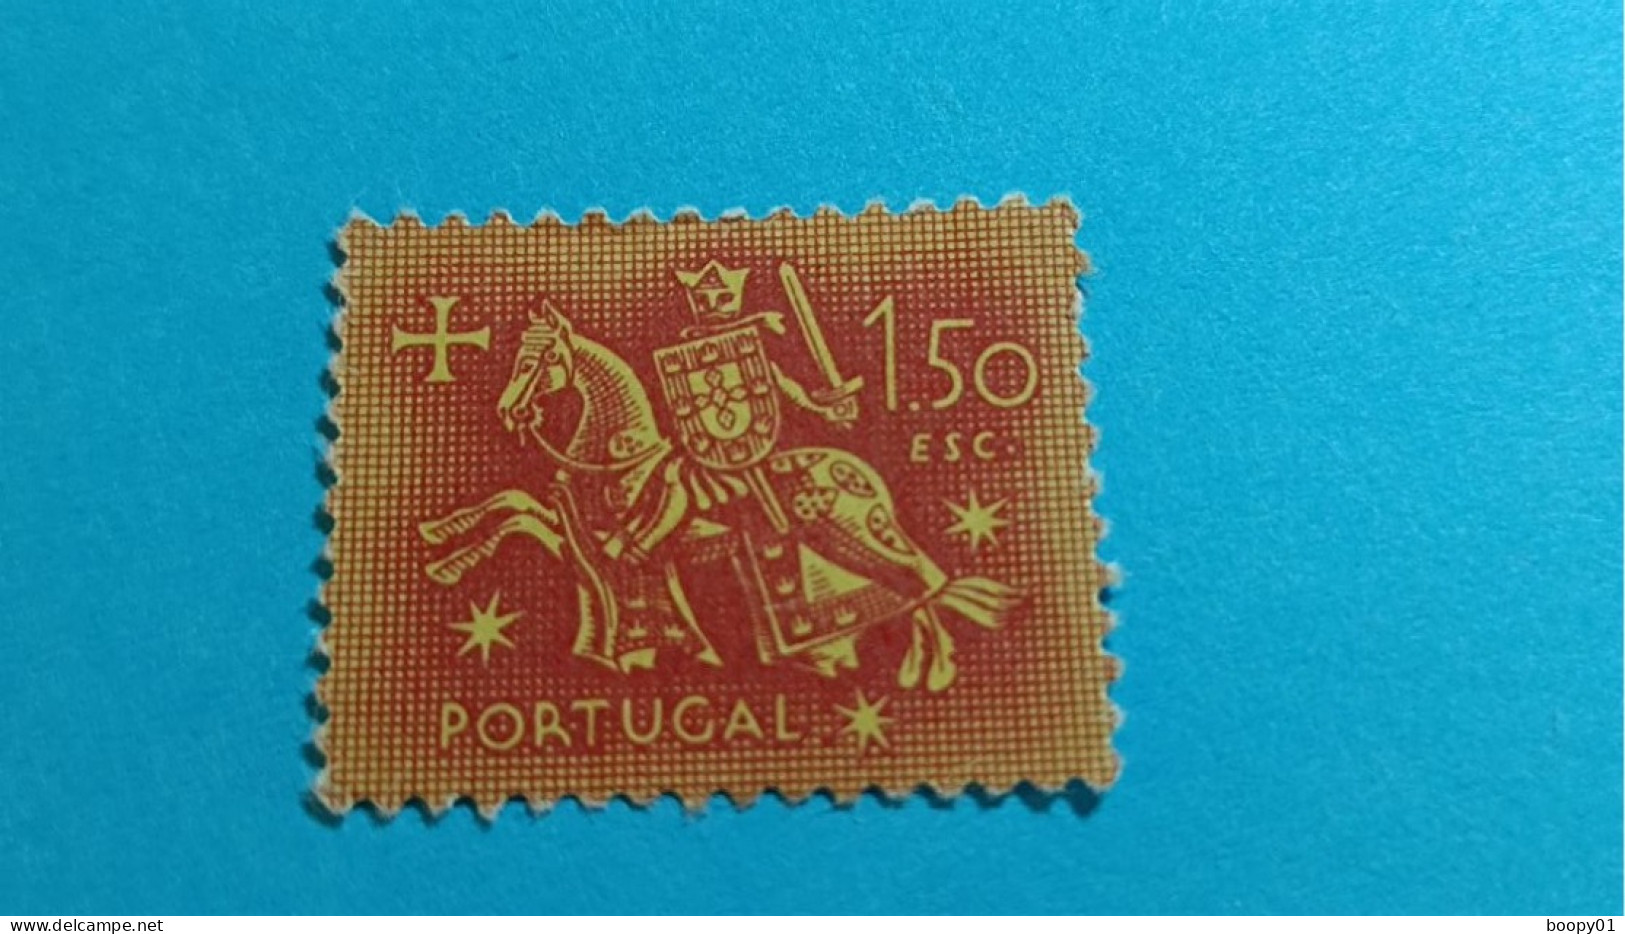 PORTUGAL - Timbre 1953 : Sceau équestre De Denis 1er De Portugal (Dinis Ou Diniz) - 1.50 Escudo - Neufs